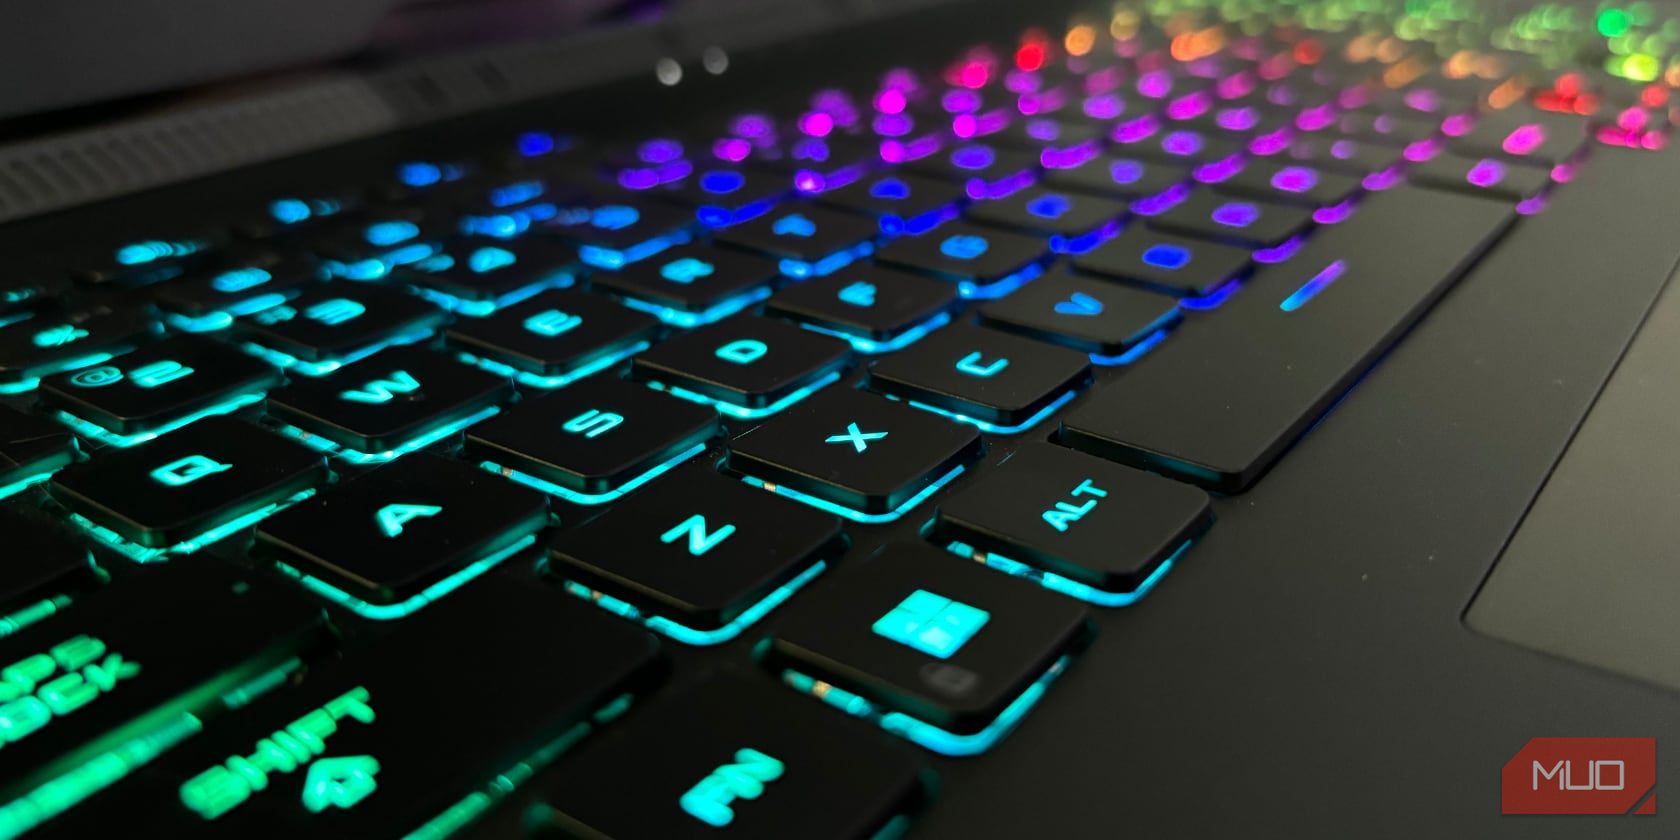 Backlit keyboard showing keys used in Windows shortcuts